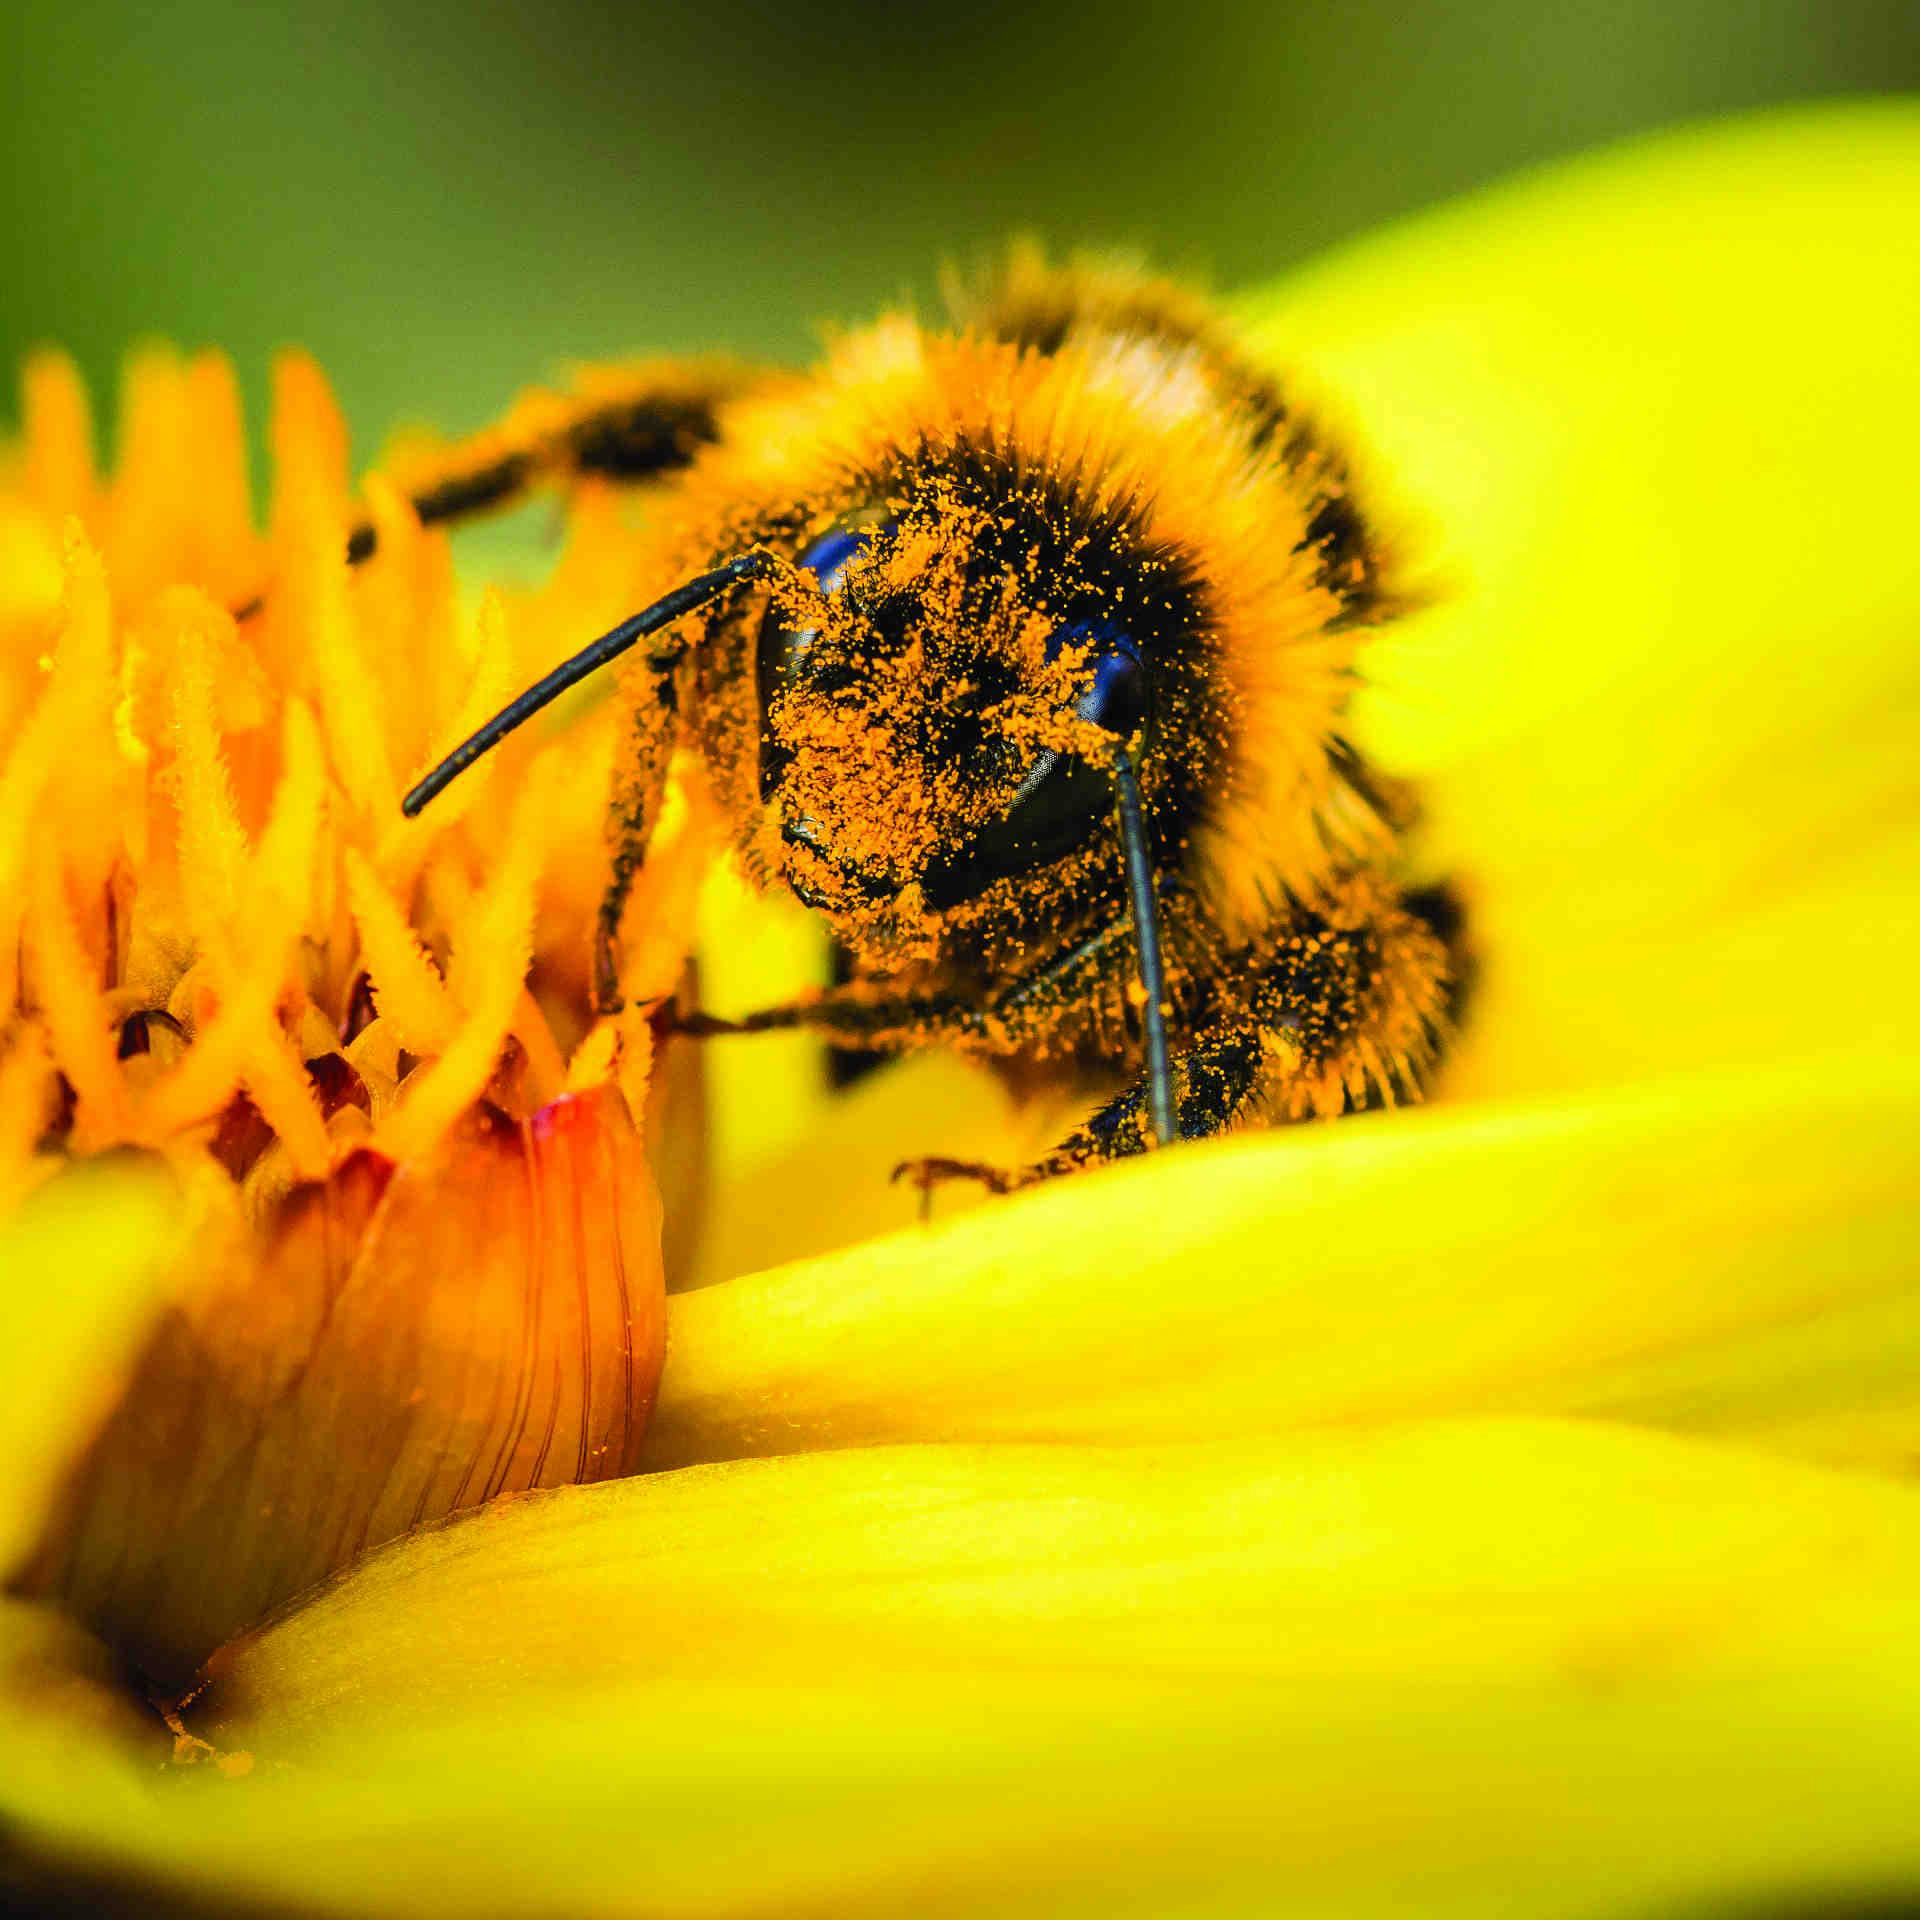 Come avete scelto il progetto "Pollinate the Planet"?